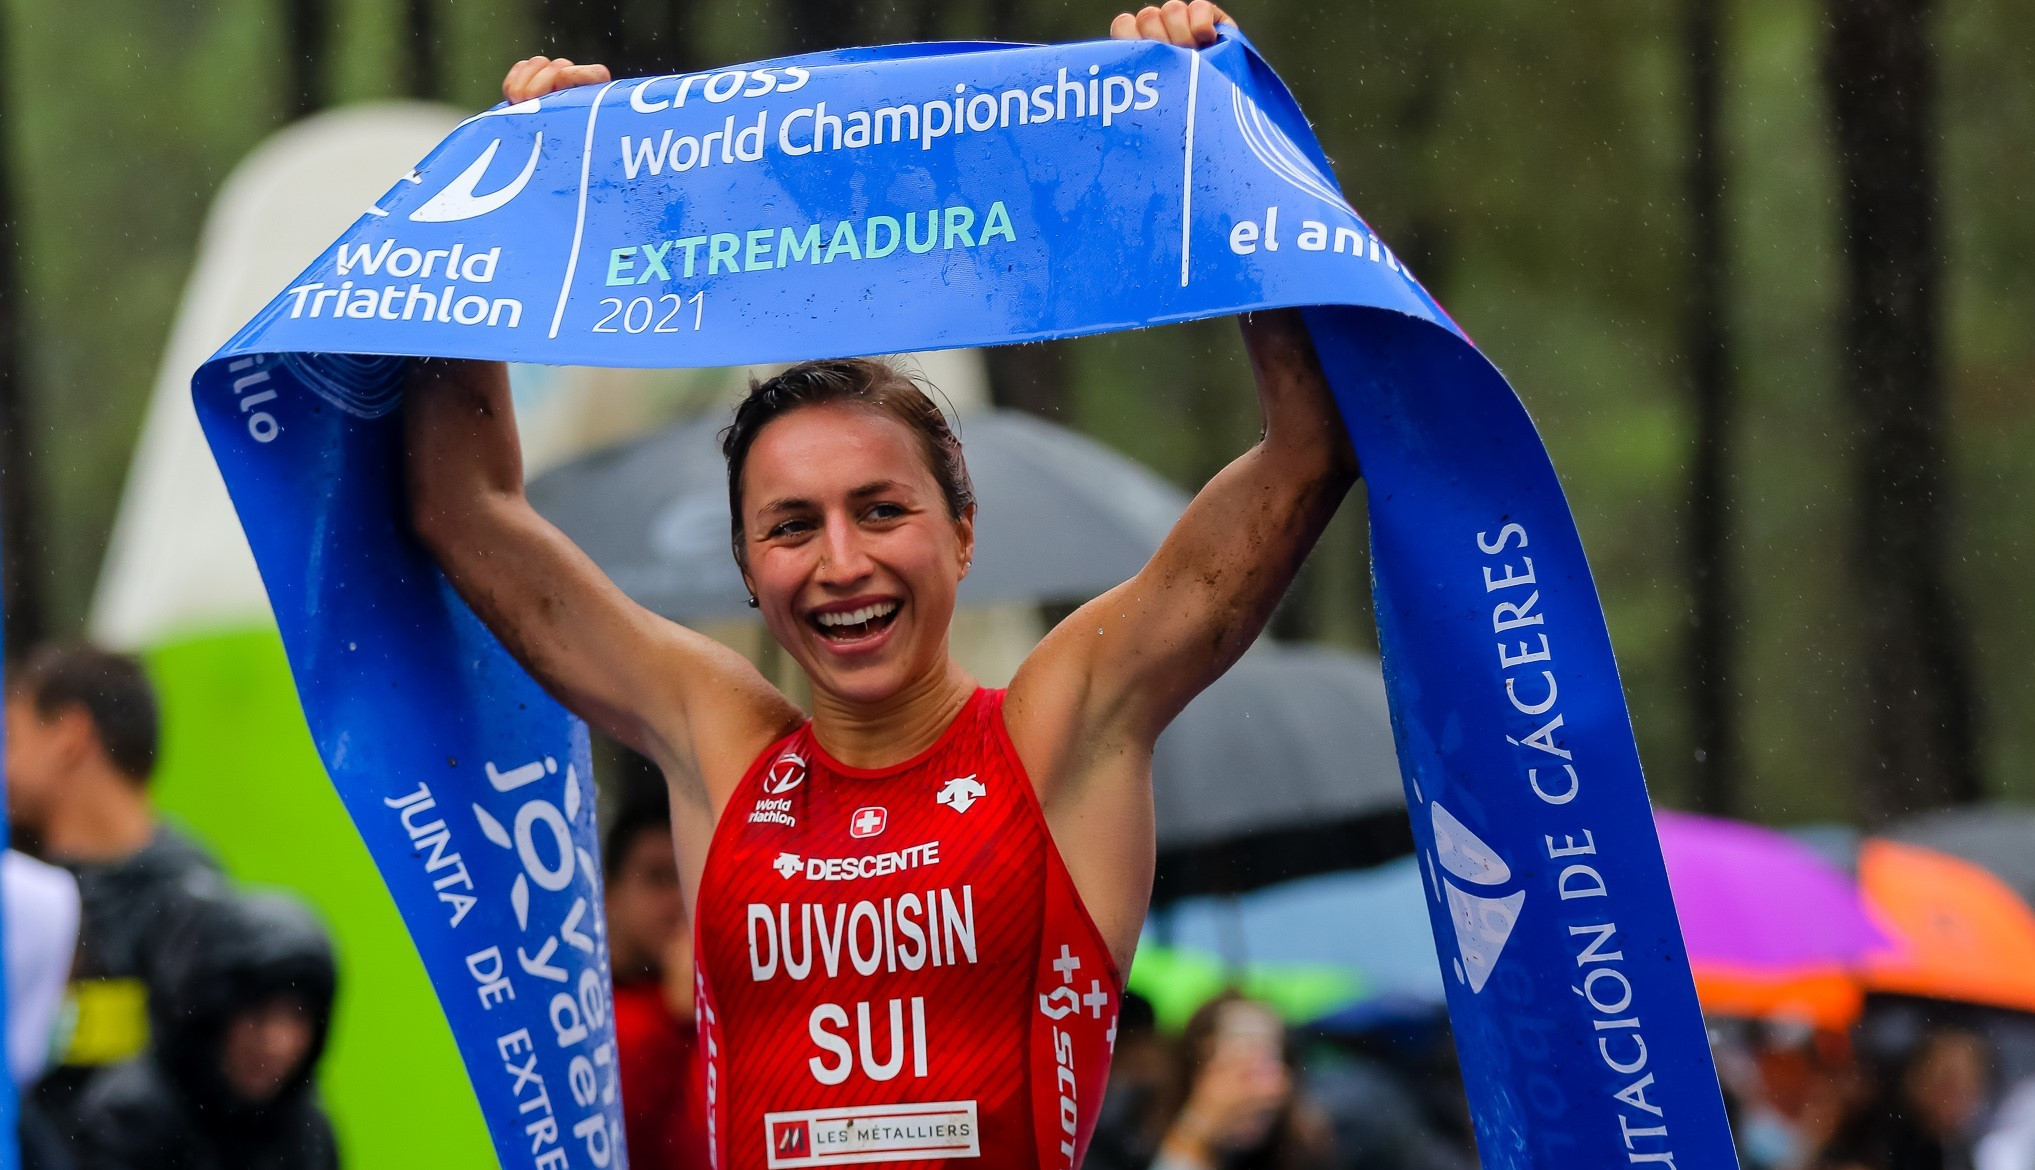 Loanne Duvoisin won the women's World Triathlon Cross title in Extremadura, while also taking the under-23 crown ©World Triathlon 